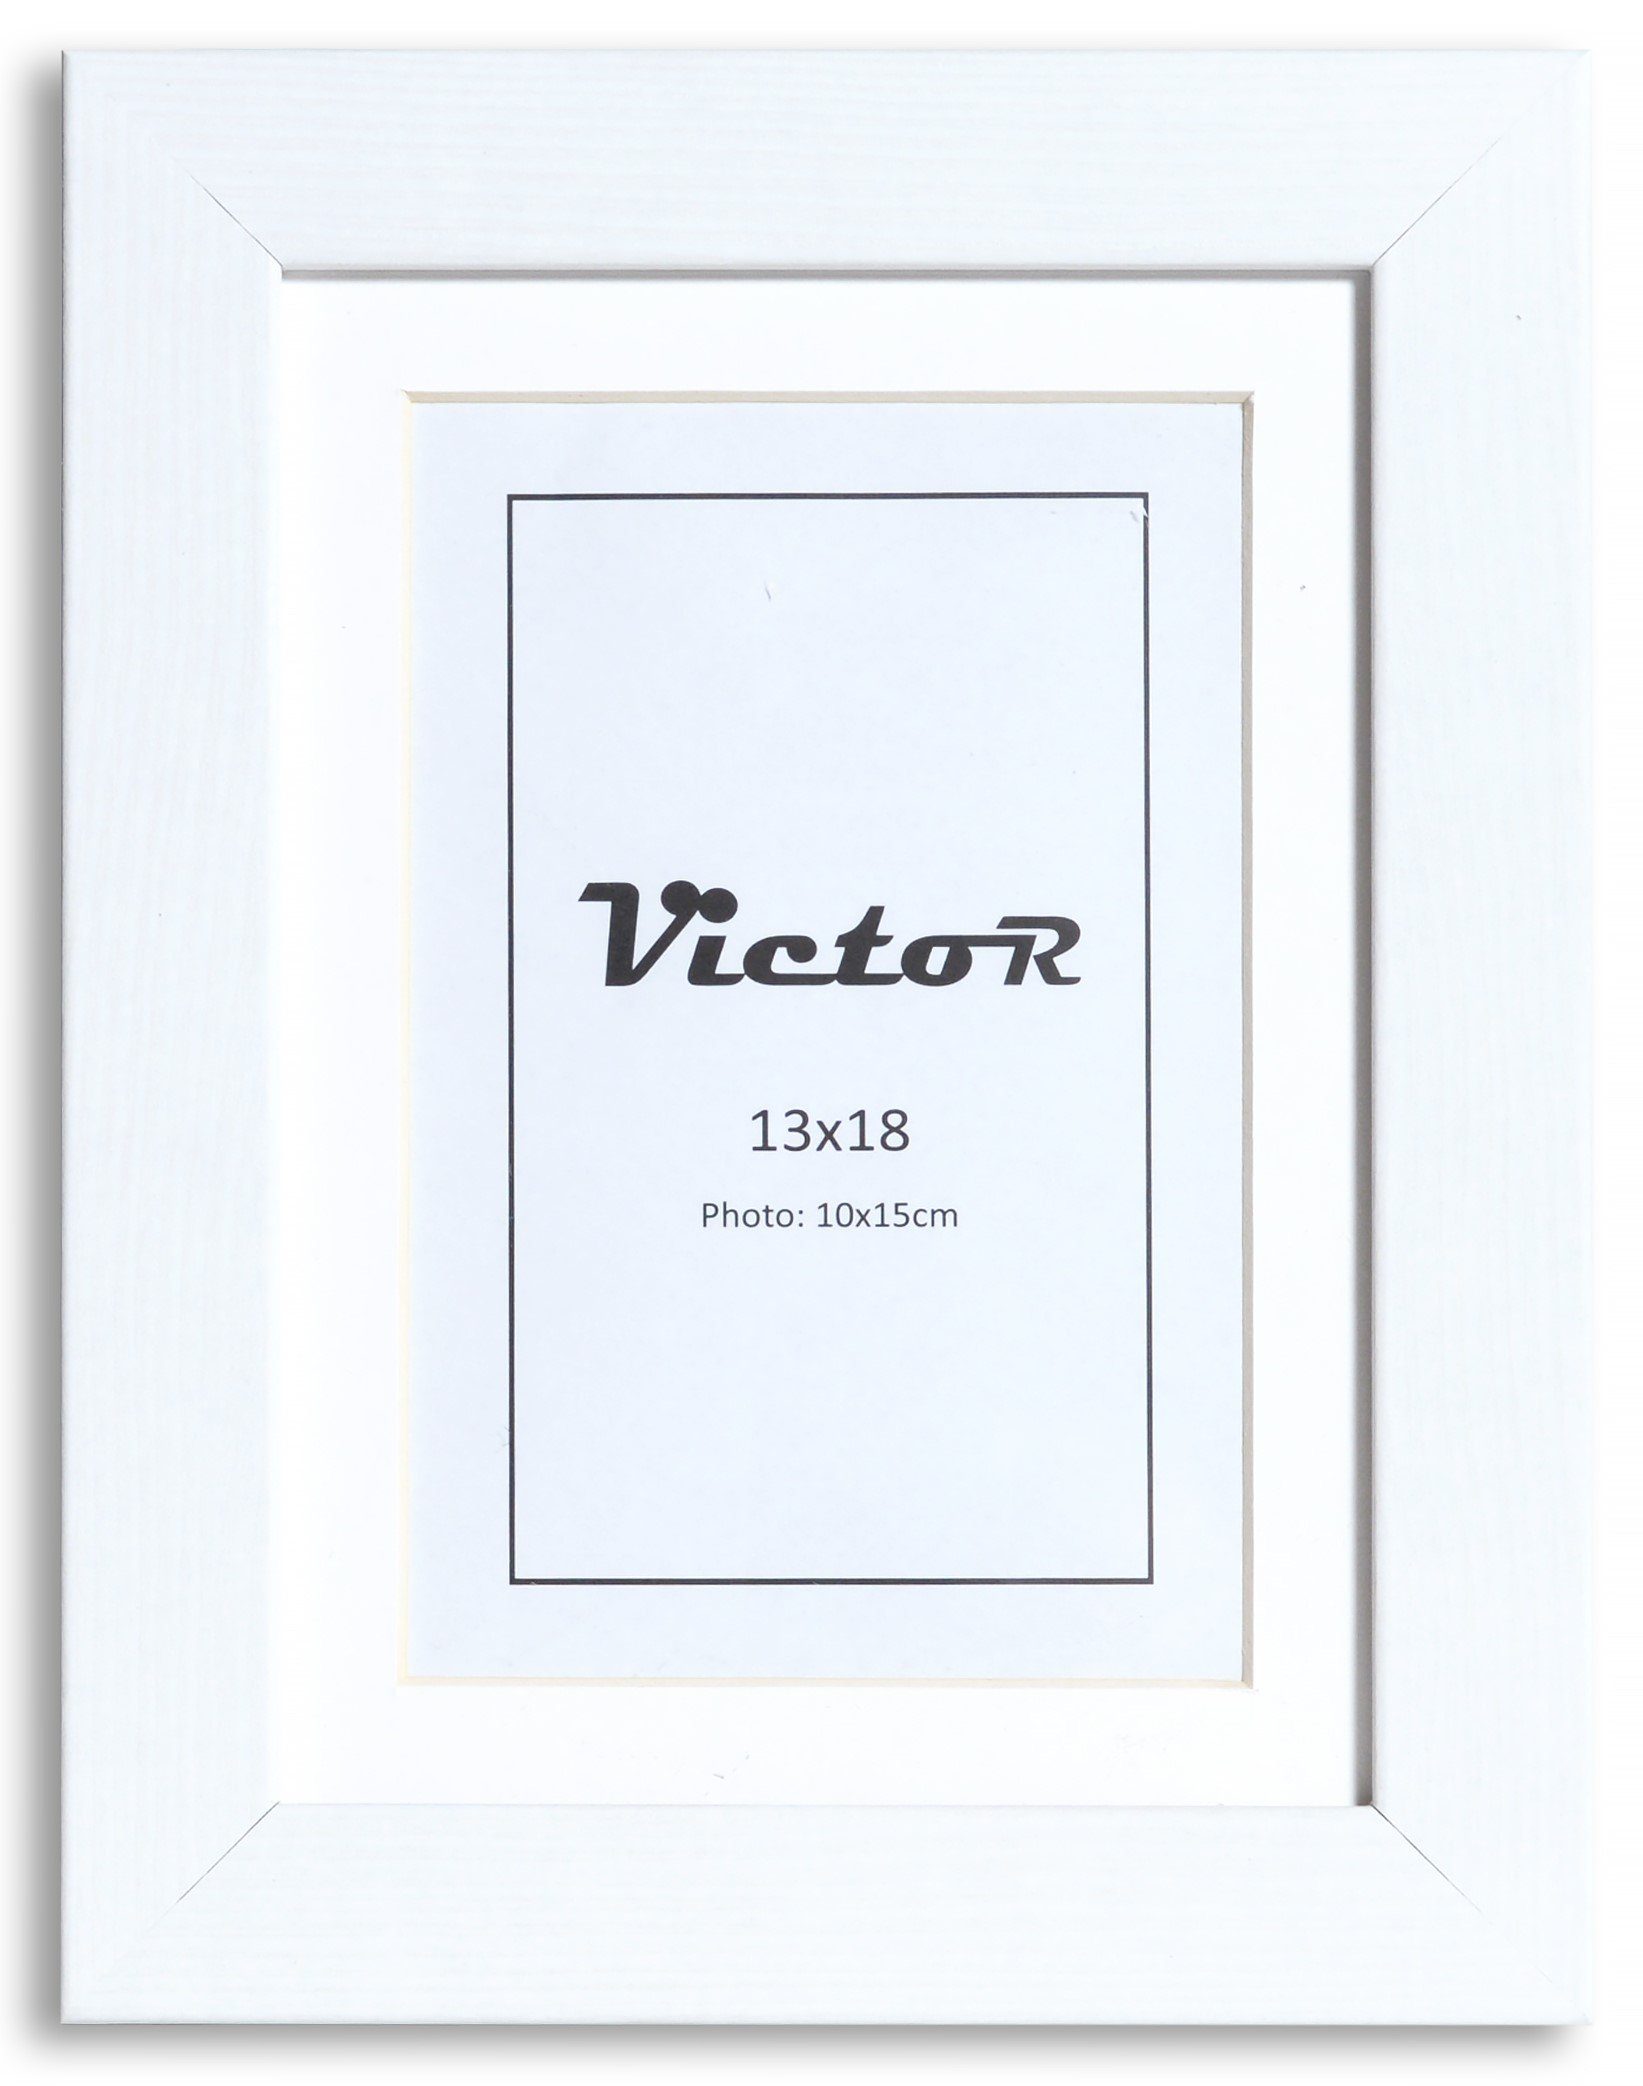 Victor (Zenith) Bilderrahmen Richter, Bilderrahmen Weiß 13x18 cm mit 10x15 cm Passepartout, Holz